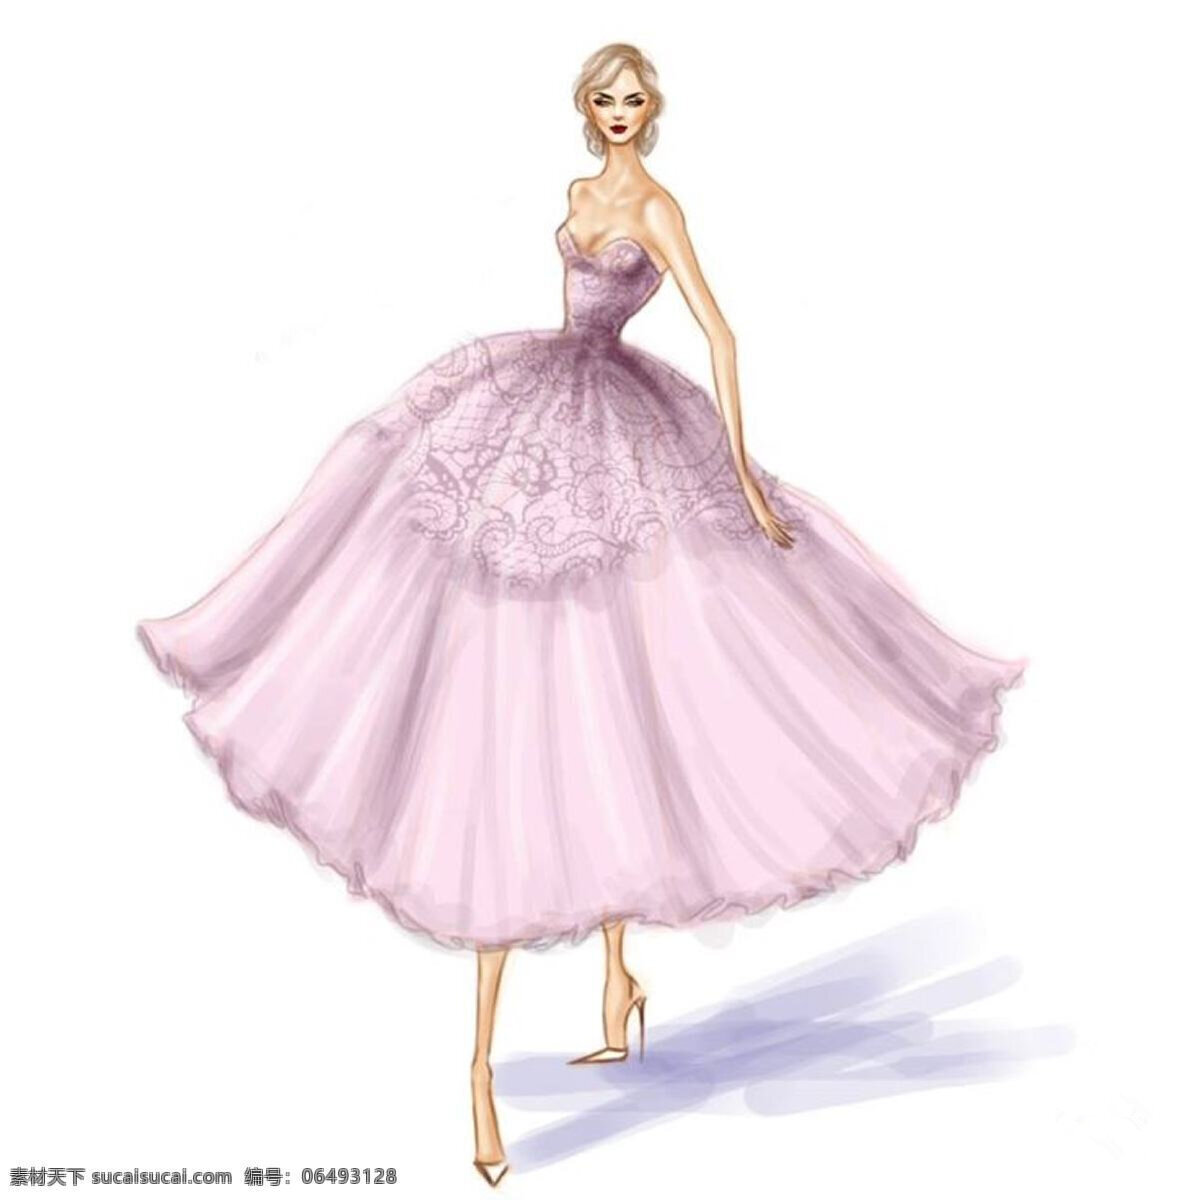 紫色婚纱设计 欧式 婚纱 大气 手绘 简约 现代